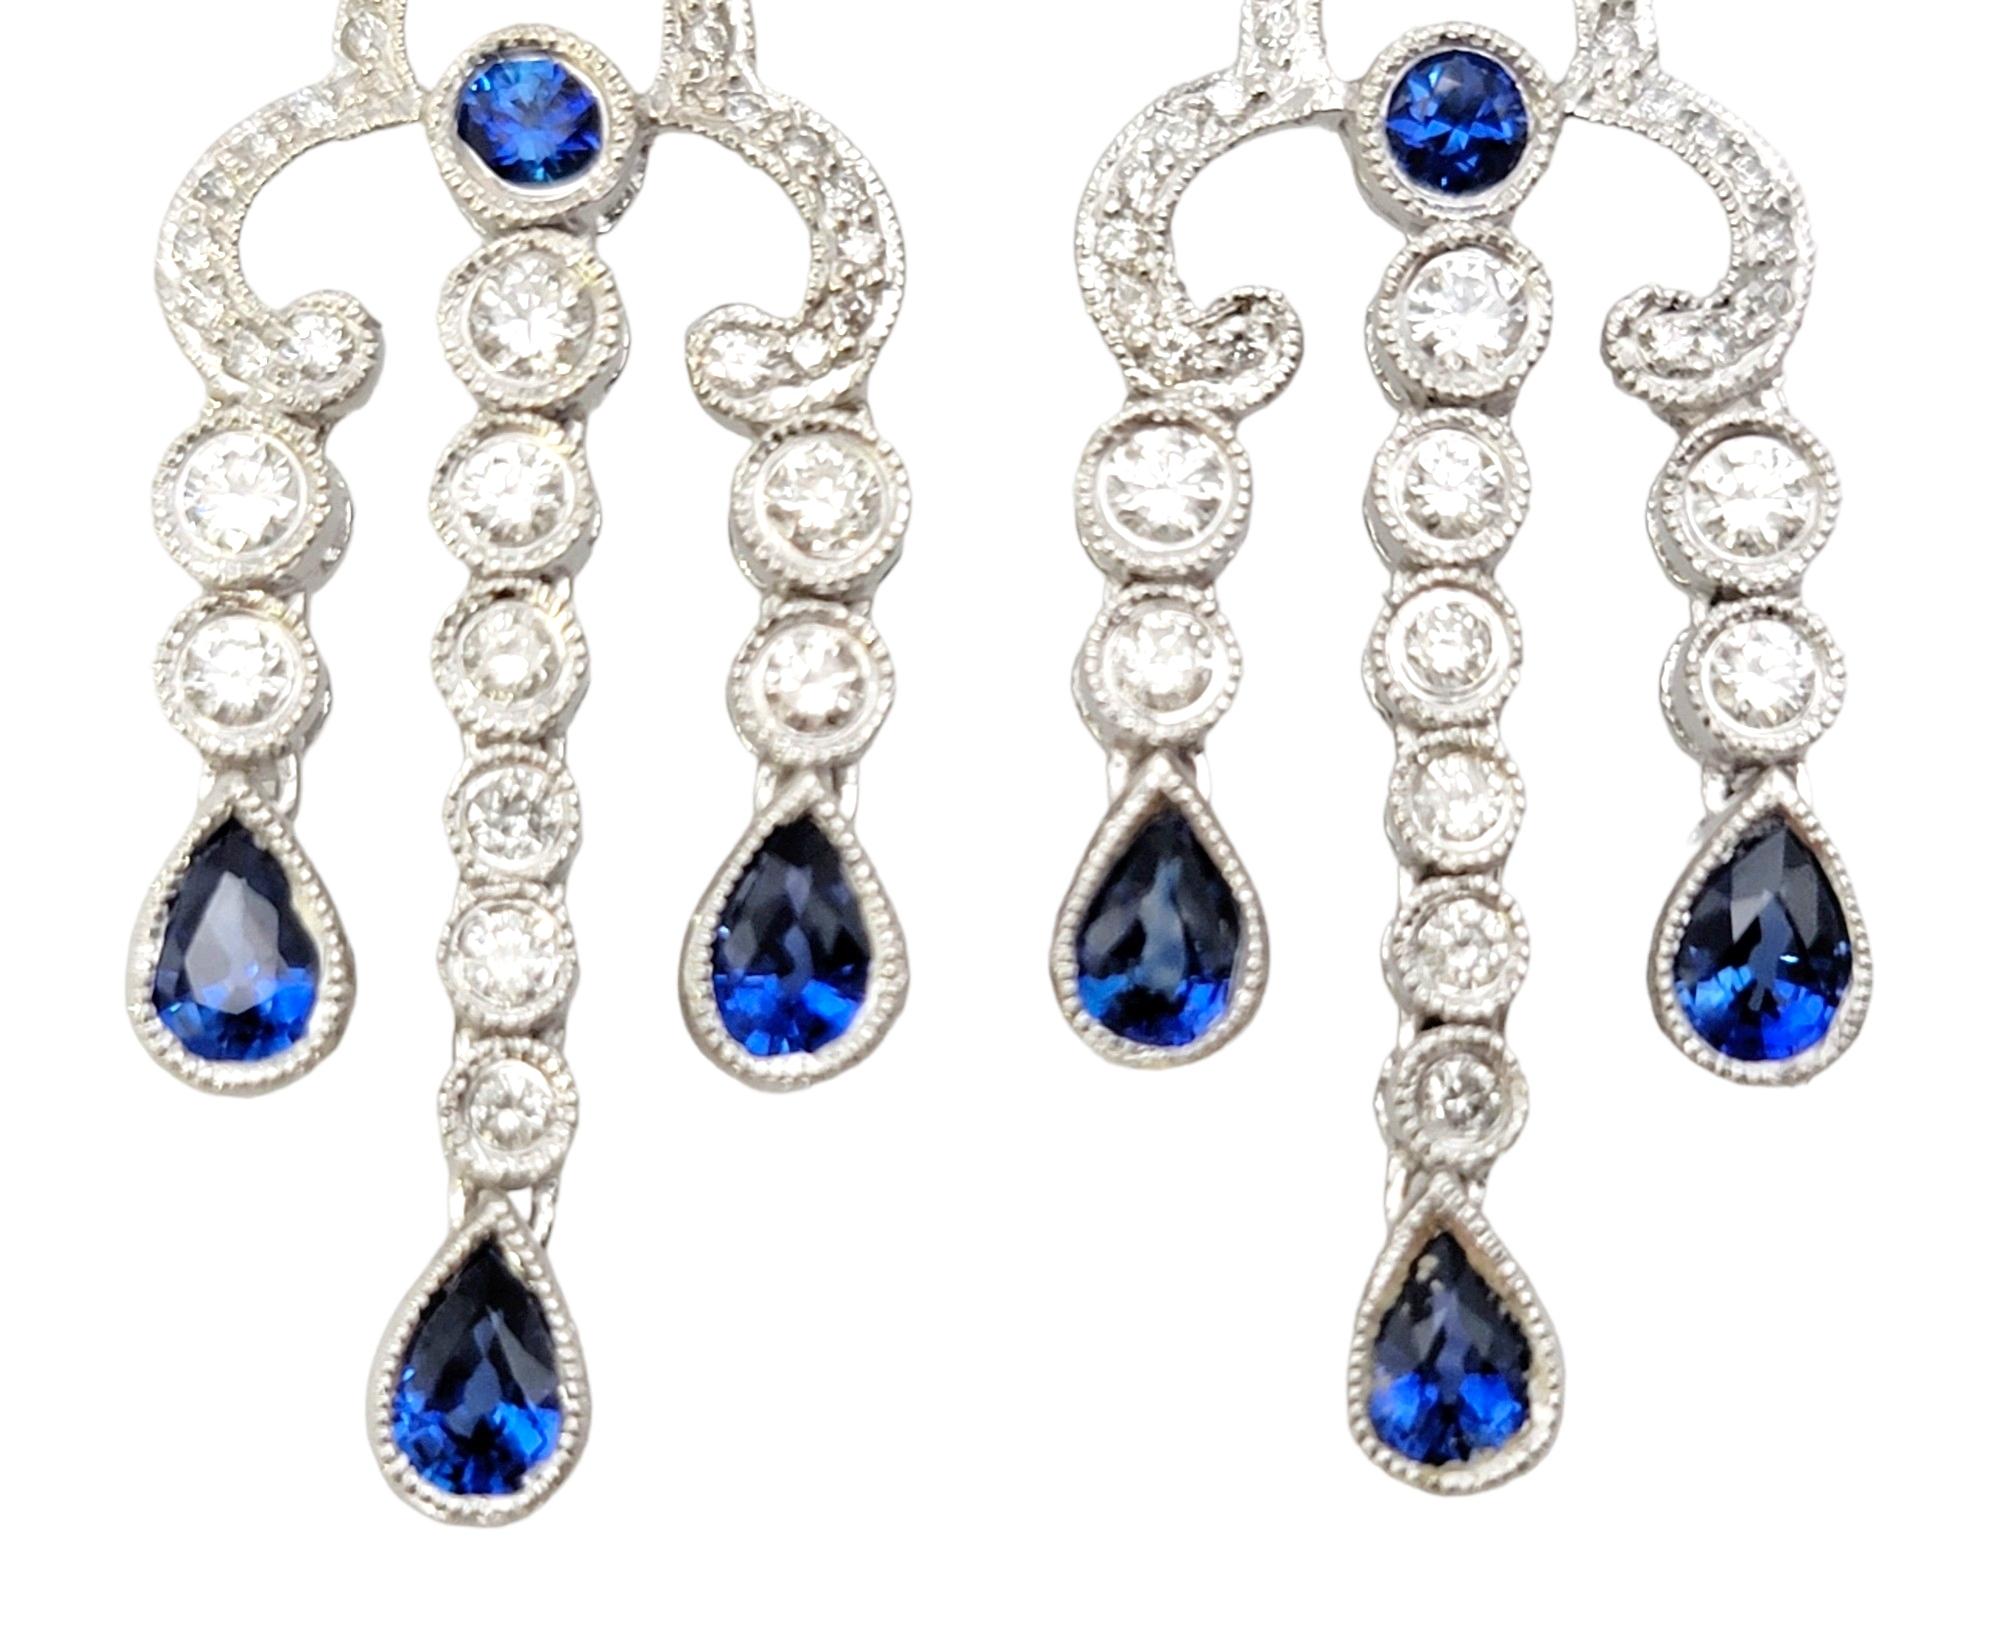 14 karat gold chandelier earrings